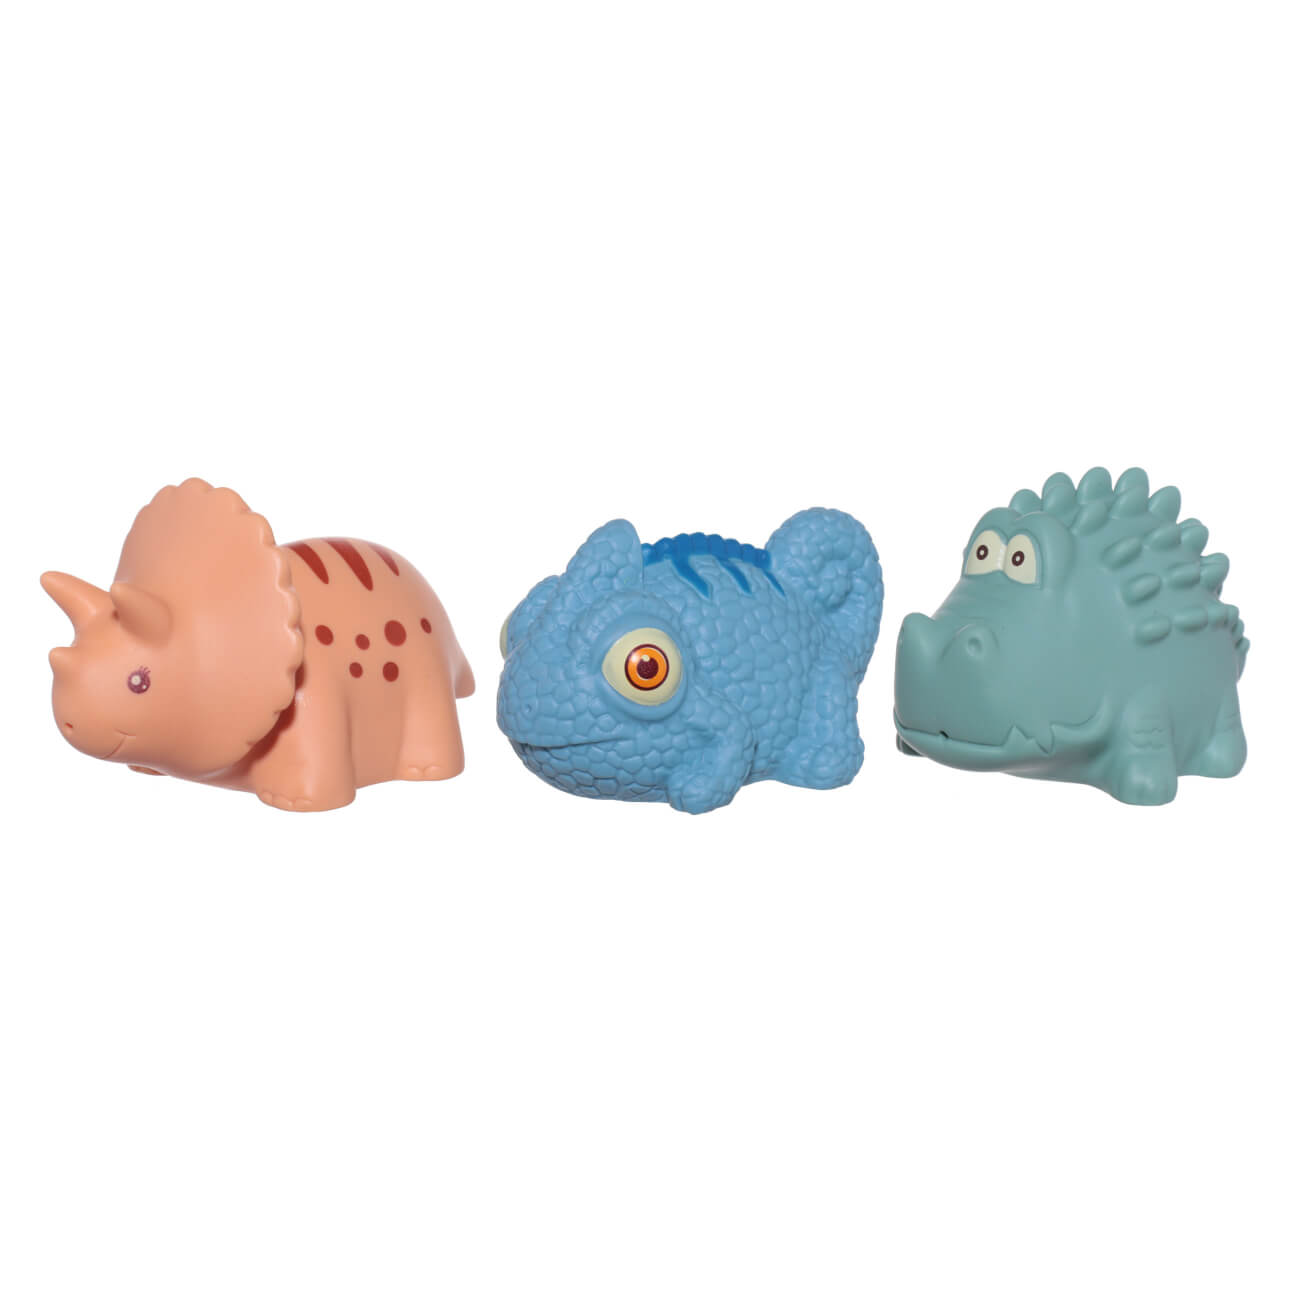 Набор игрушек для купания, 3 пр, ПВХ, цветной, Хамелеон/Динозавр/Крокодил, Kiddy горка для купания силиконовая голубой